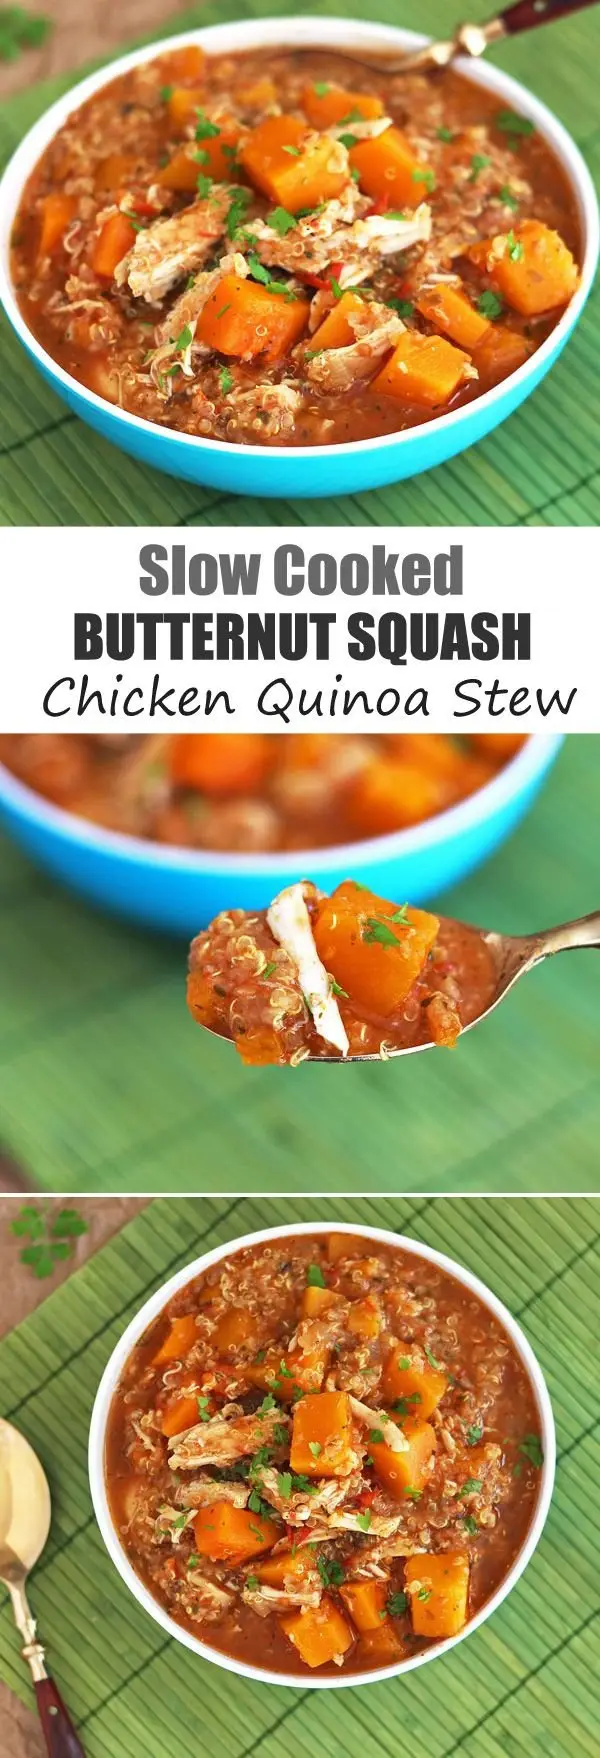 Butternut Squash Chicken Quinoa Stew